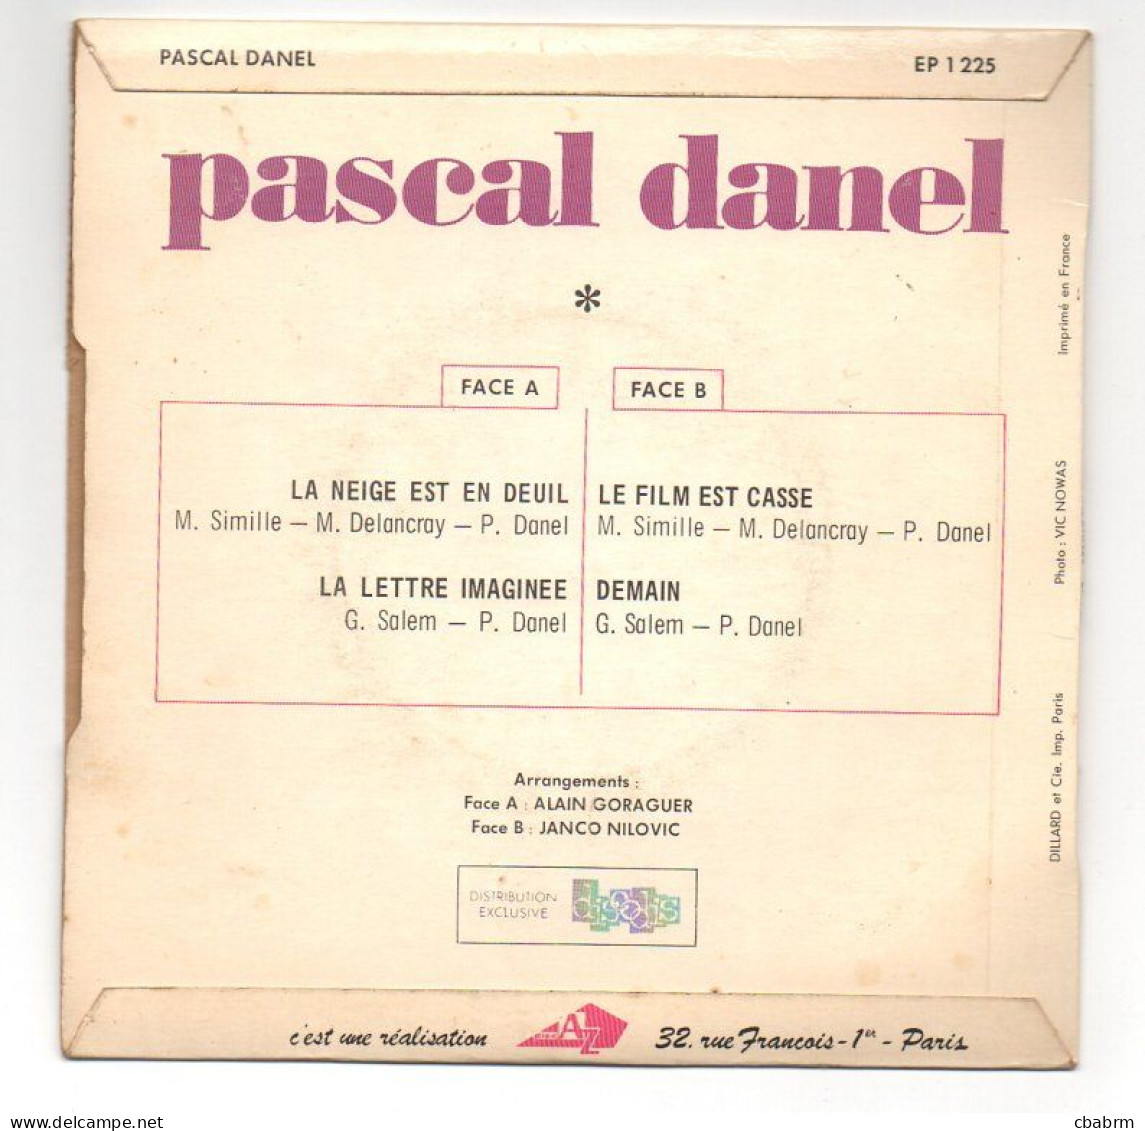 EP 45 TOURS PASCAL DANEL LA NEIGE EST EN DEUIL 1968 FRANCE Disc'Az ‎ EP 1225 - Other - French Music